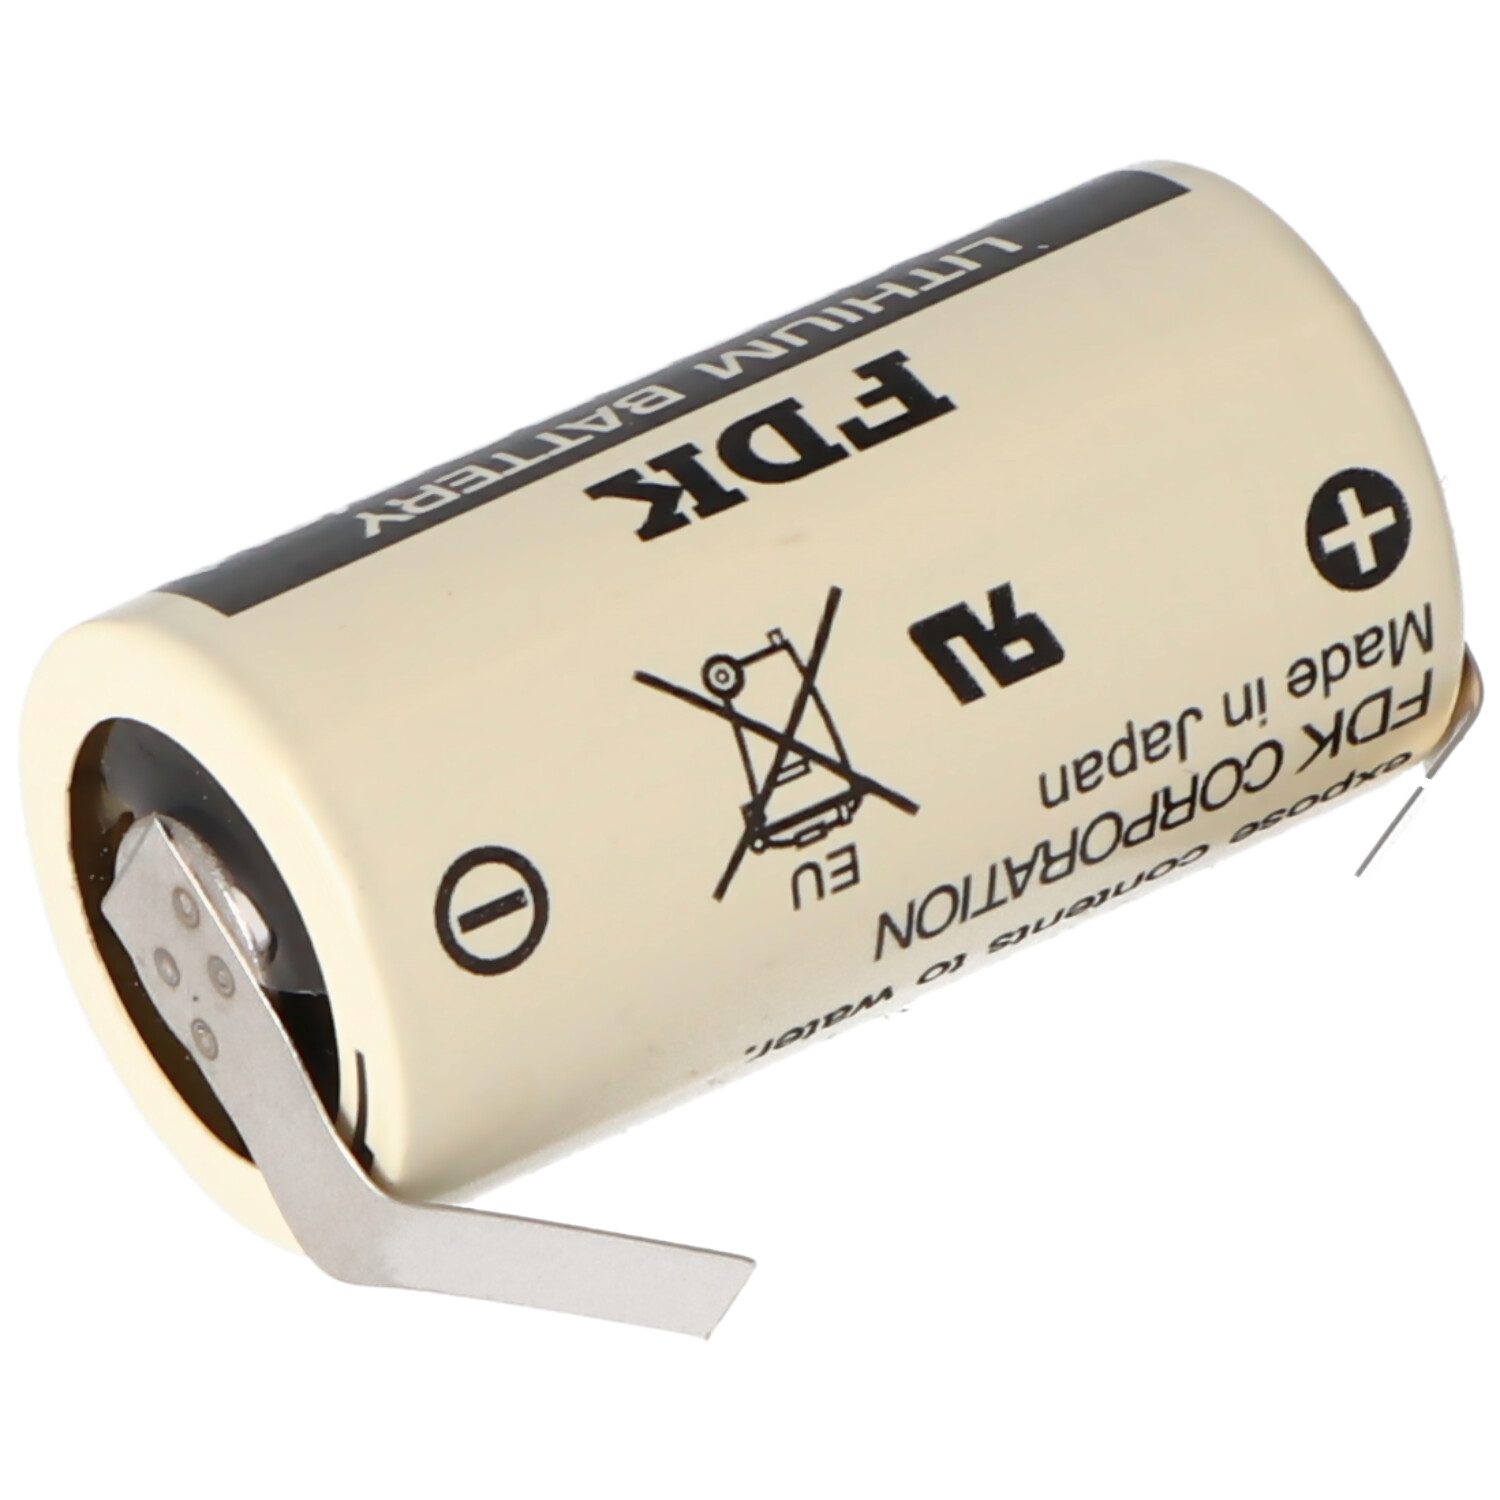 Sanyo Lithium Batterie CR17335 SE Size 2/3A mit Lötfahne U-Form